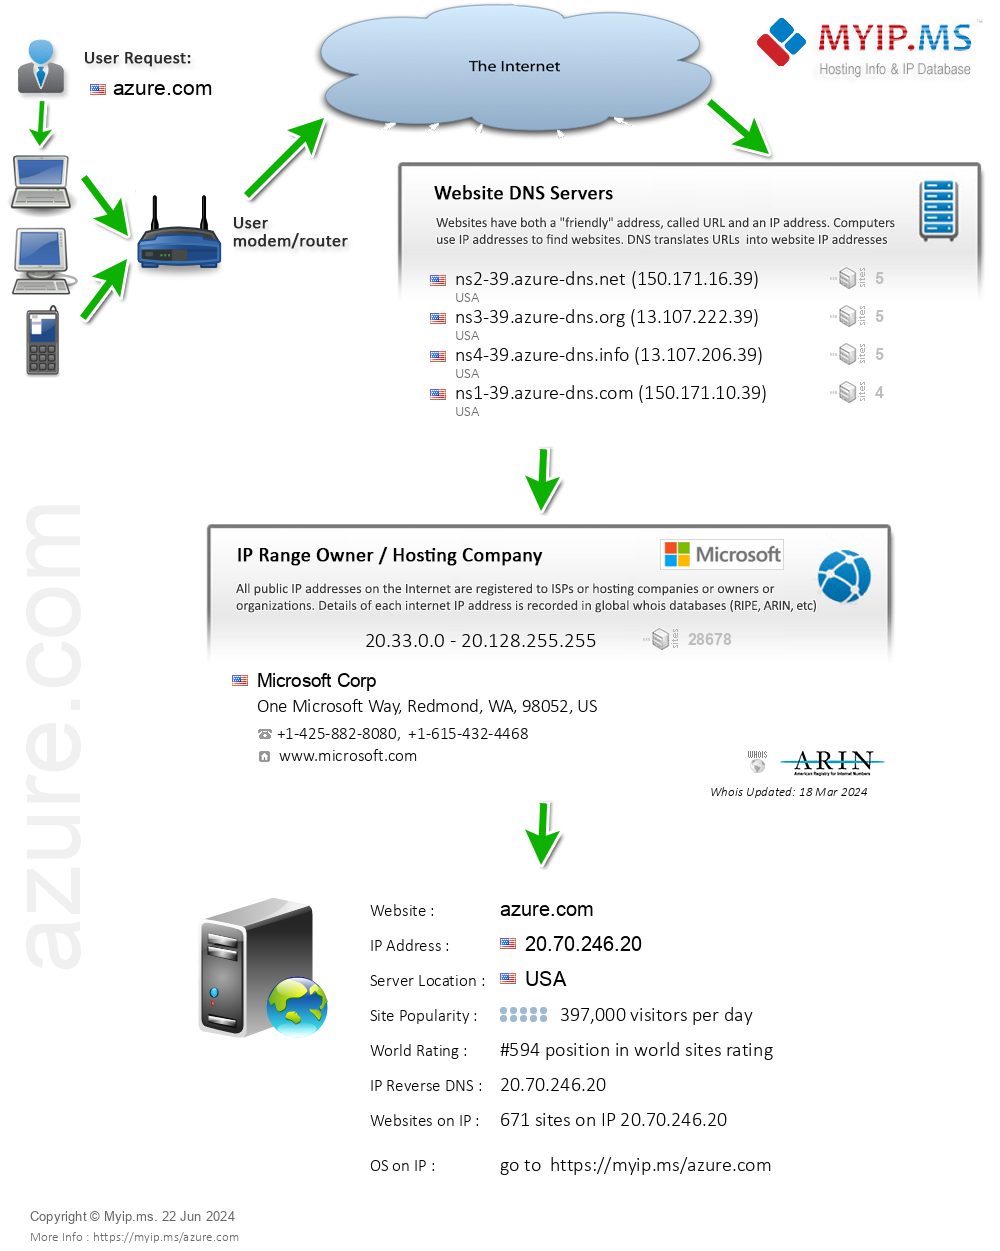 Azure.com - Website Hosting Visual IP Diagram